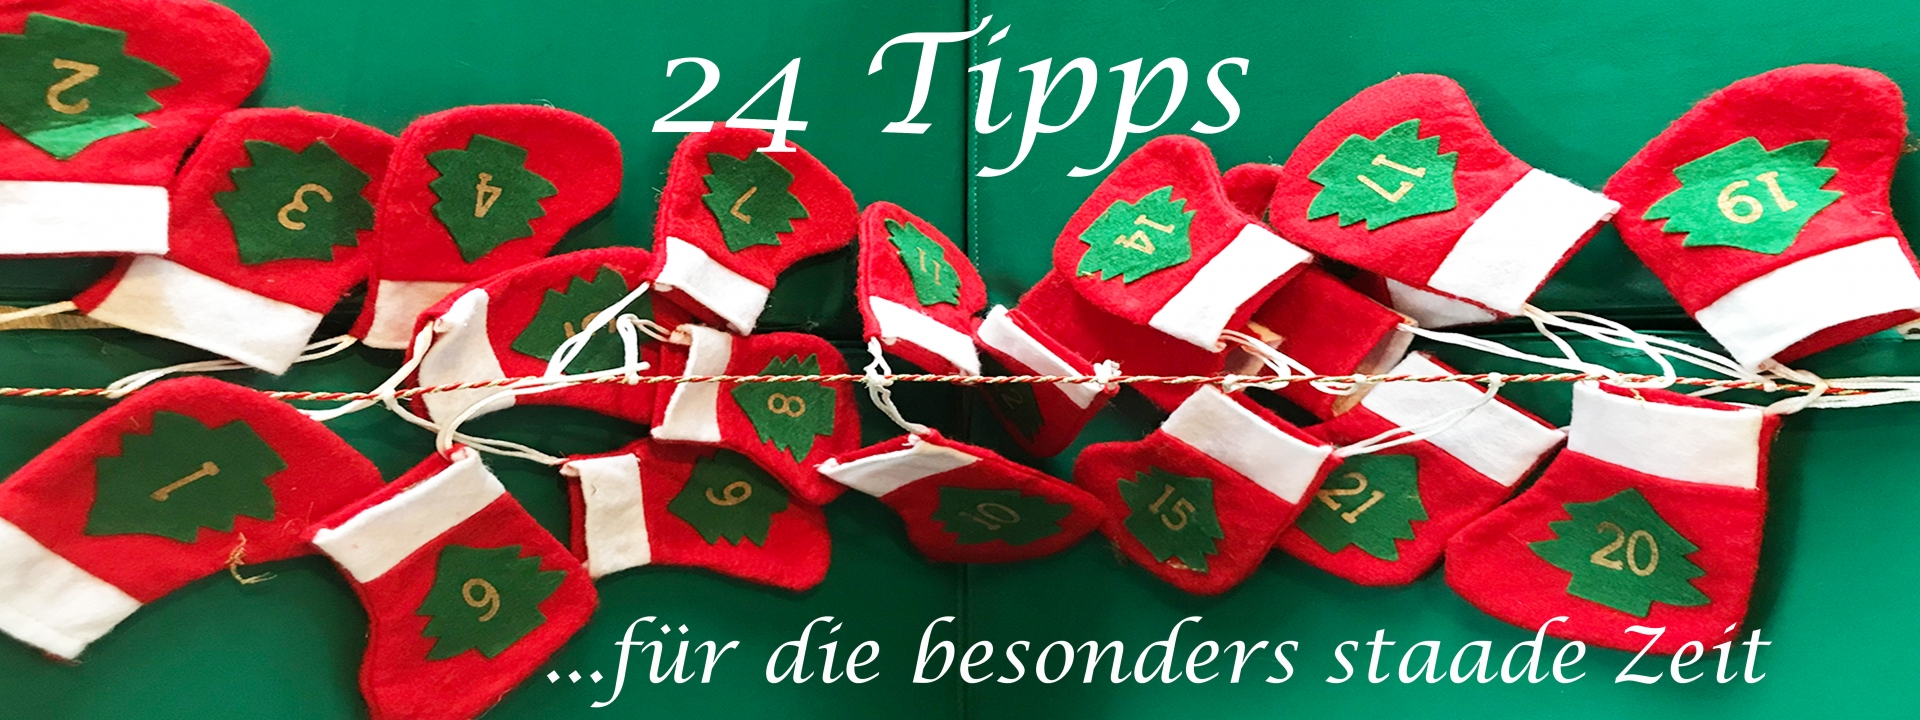 Foto: Adventskalender mit 24 Nikolaus-Stiefelchen aus Filz. Dazu der Schriftzug: 24 Tipps ...für die besonders staade Zeit